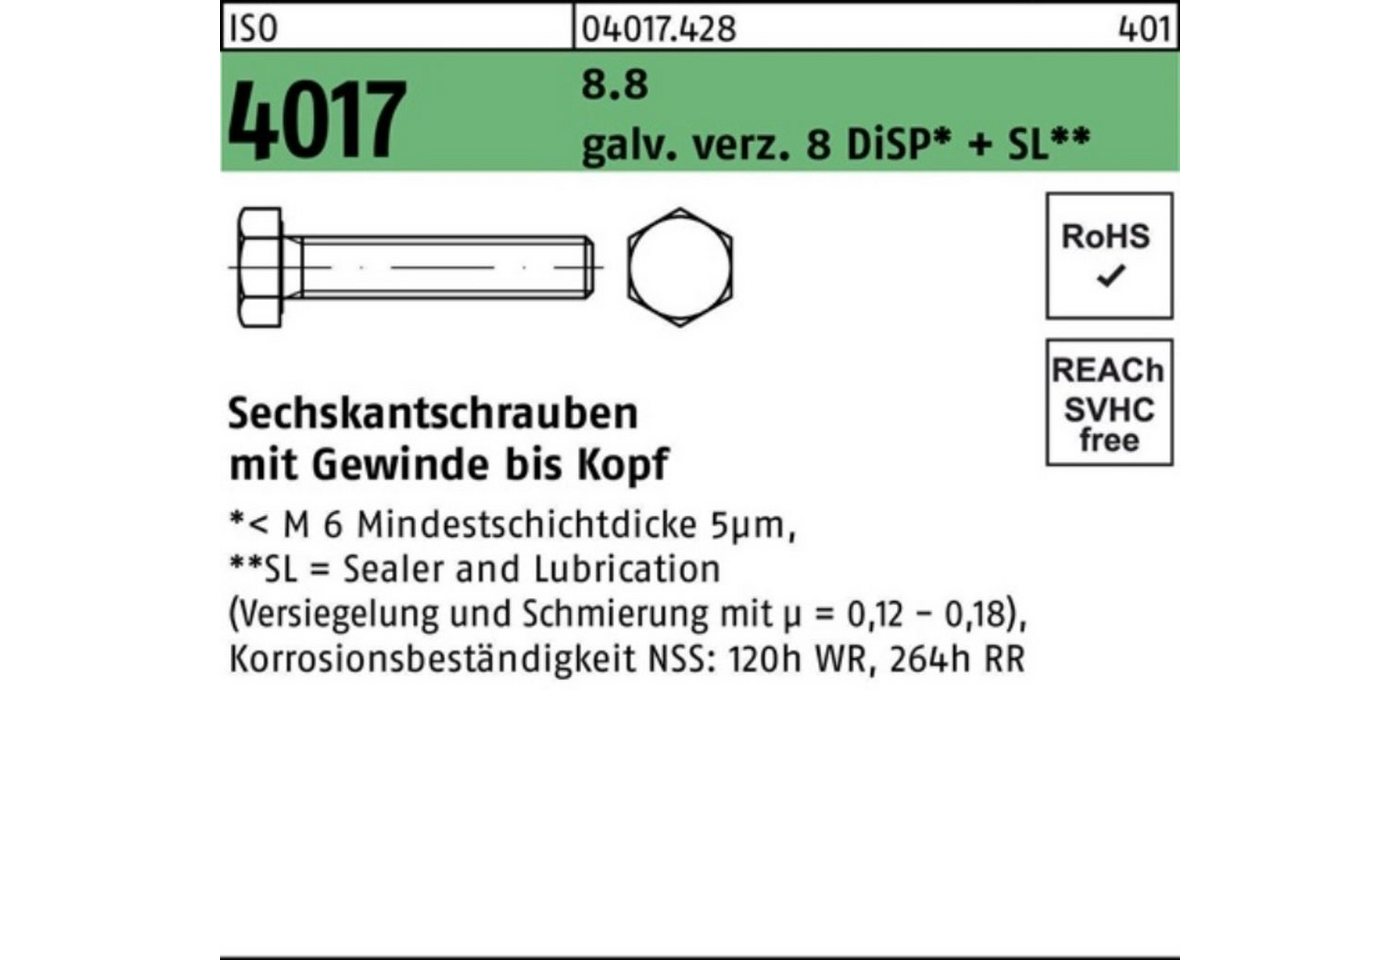 Bufab Sechskantschraube 100er Pack Sechskantschraube ISO 4017 VG M16x 35 8.8 galv.verz. 8 DiSP von Bufab